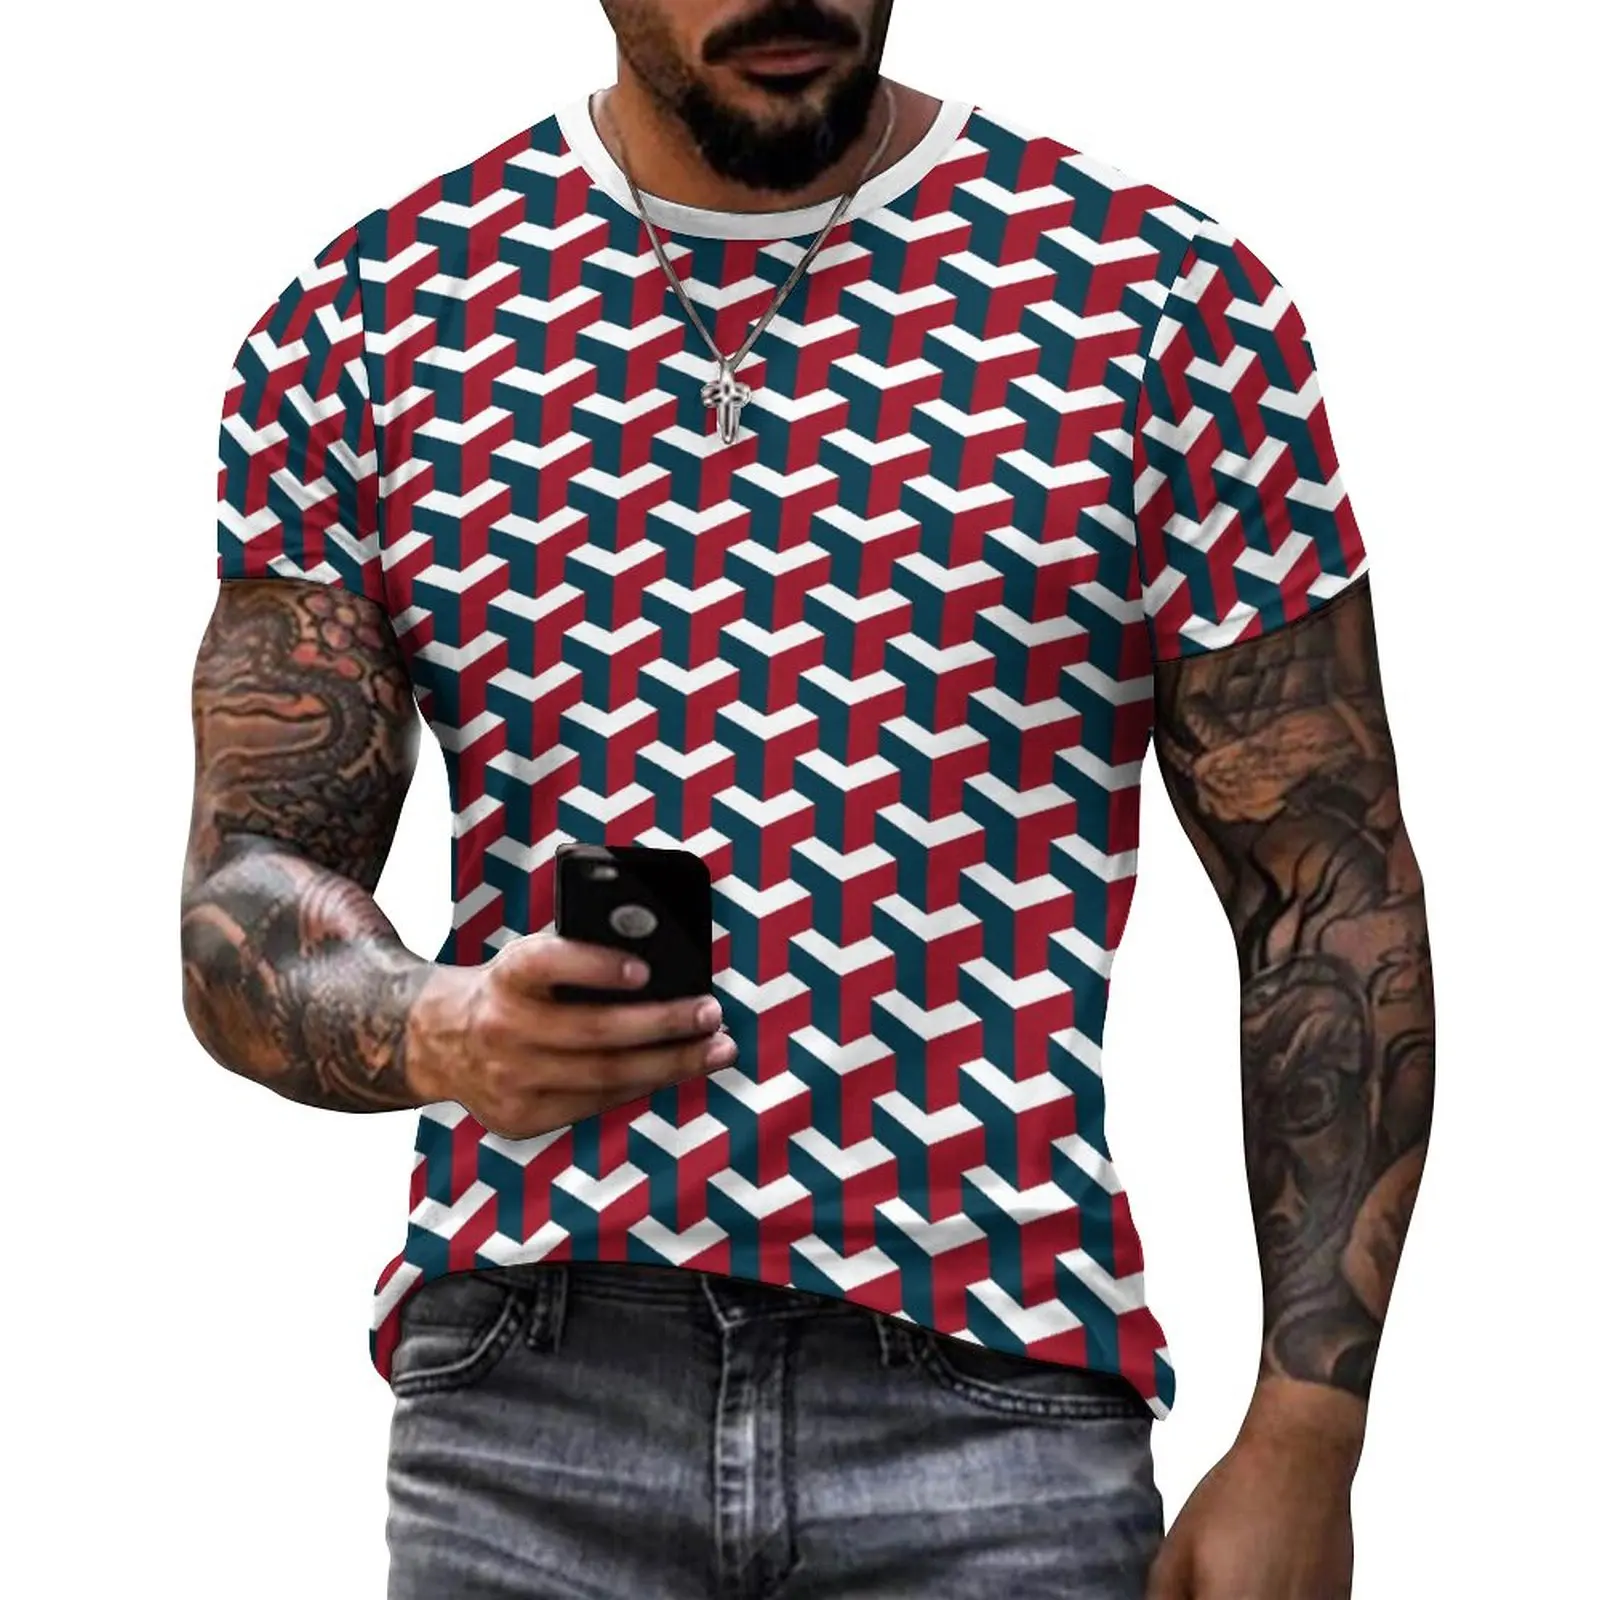 

Футболка мужская с коротким рукавом, хлопок, оригинальная брендовая уличная одежда, женская футболка с принтом и V-образным вырезом, летняя Модная рубашка в стиле Харадзюку, хип-хоп, США